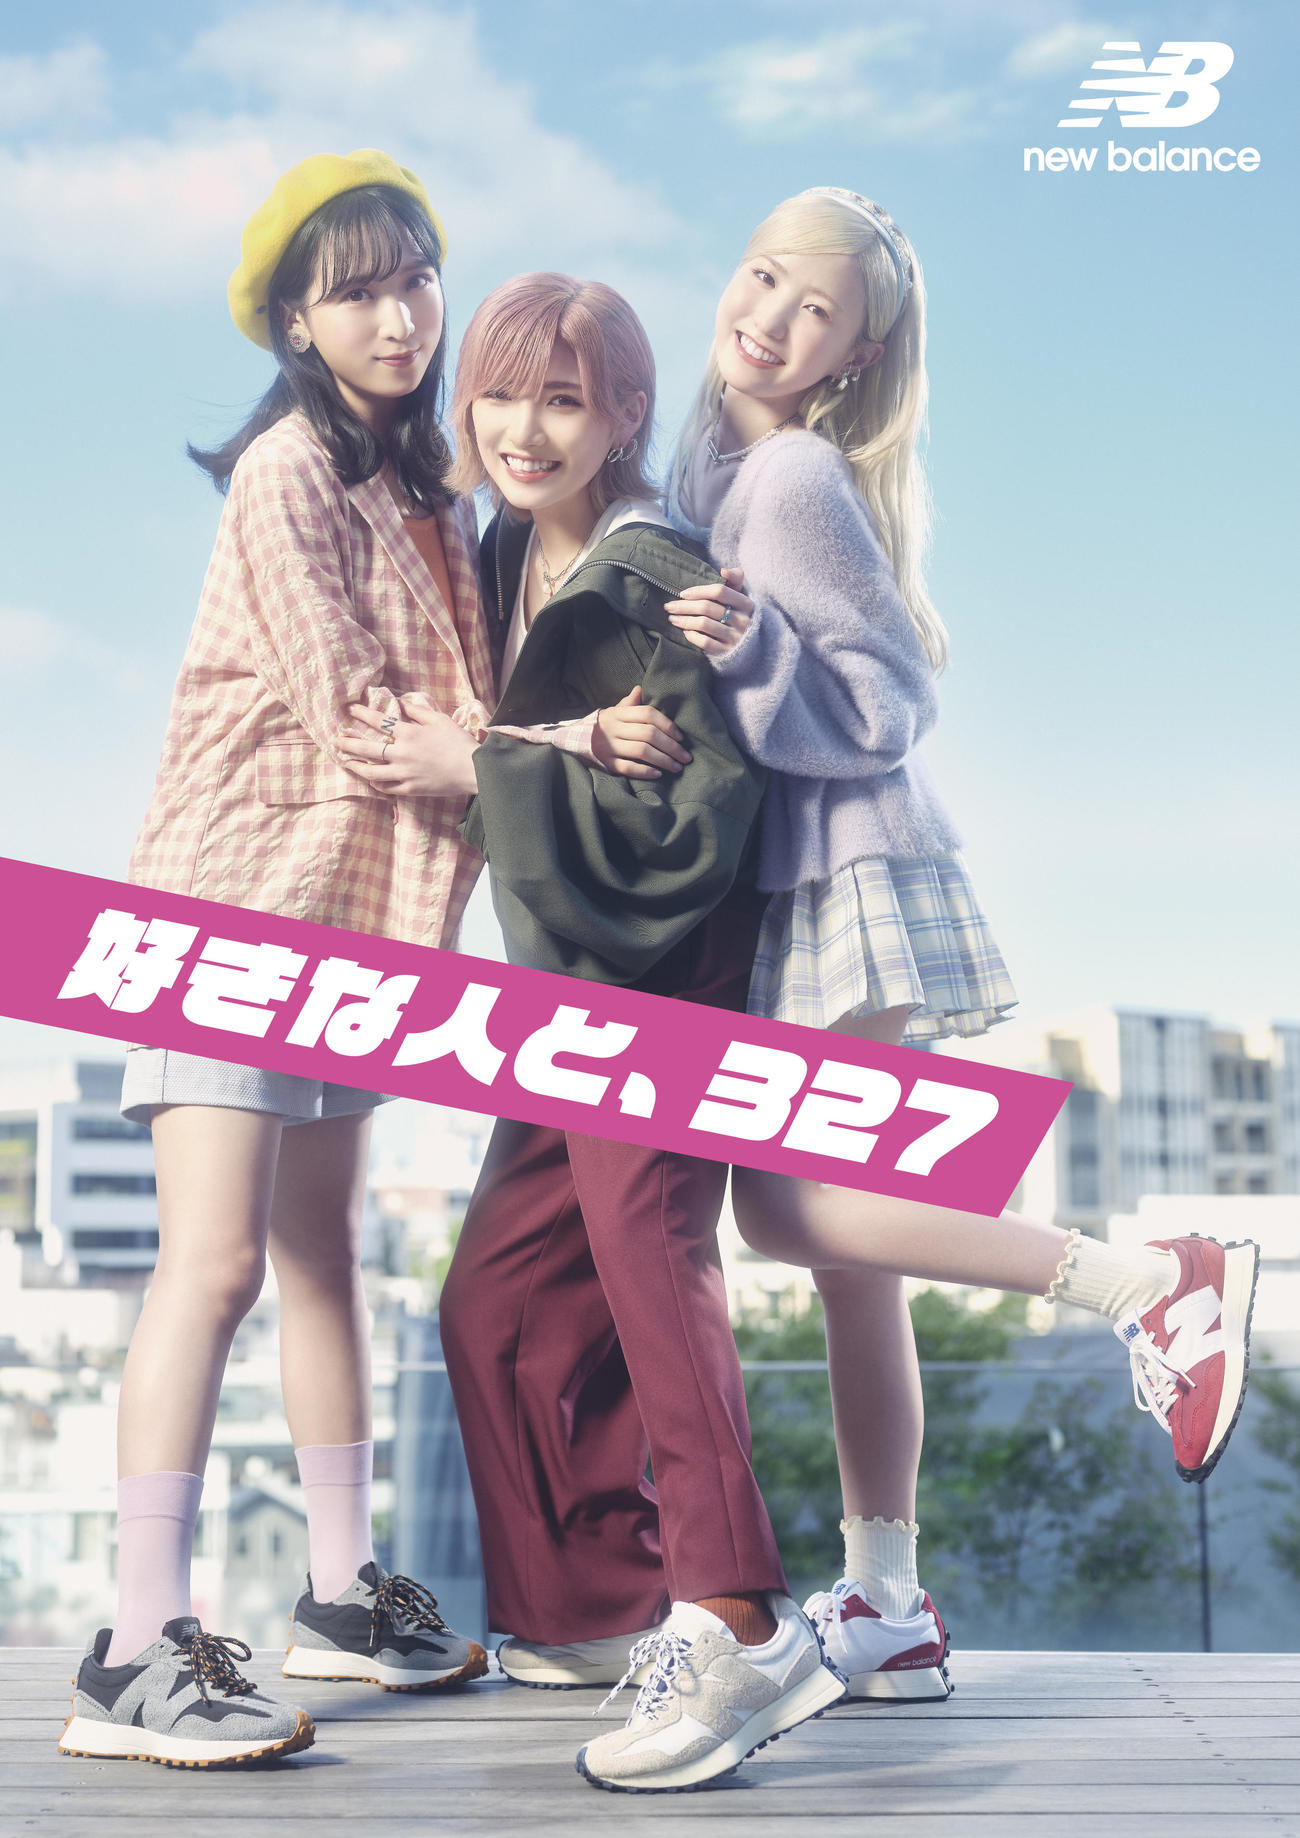 ABCマートのウェブCM「ニューバランス327 Walking Dance編」に出演するAKB48の、左から小栗有以、岡田奈々、本田仁美